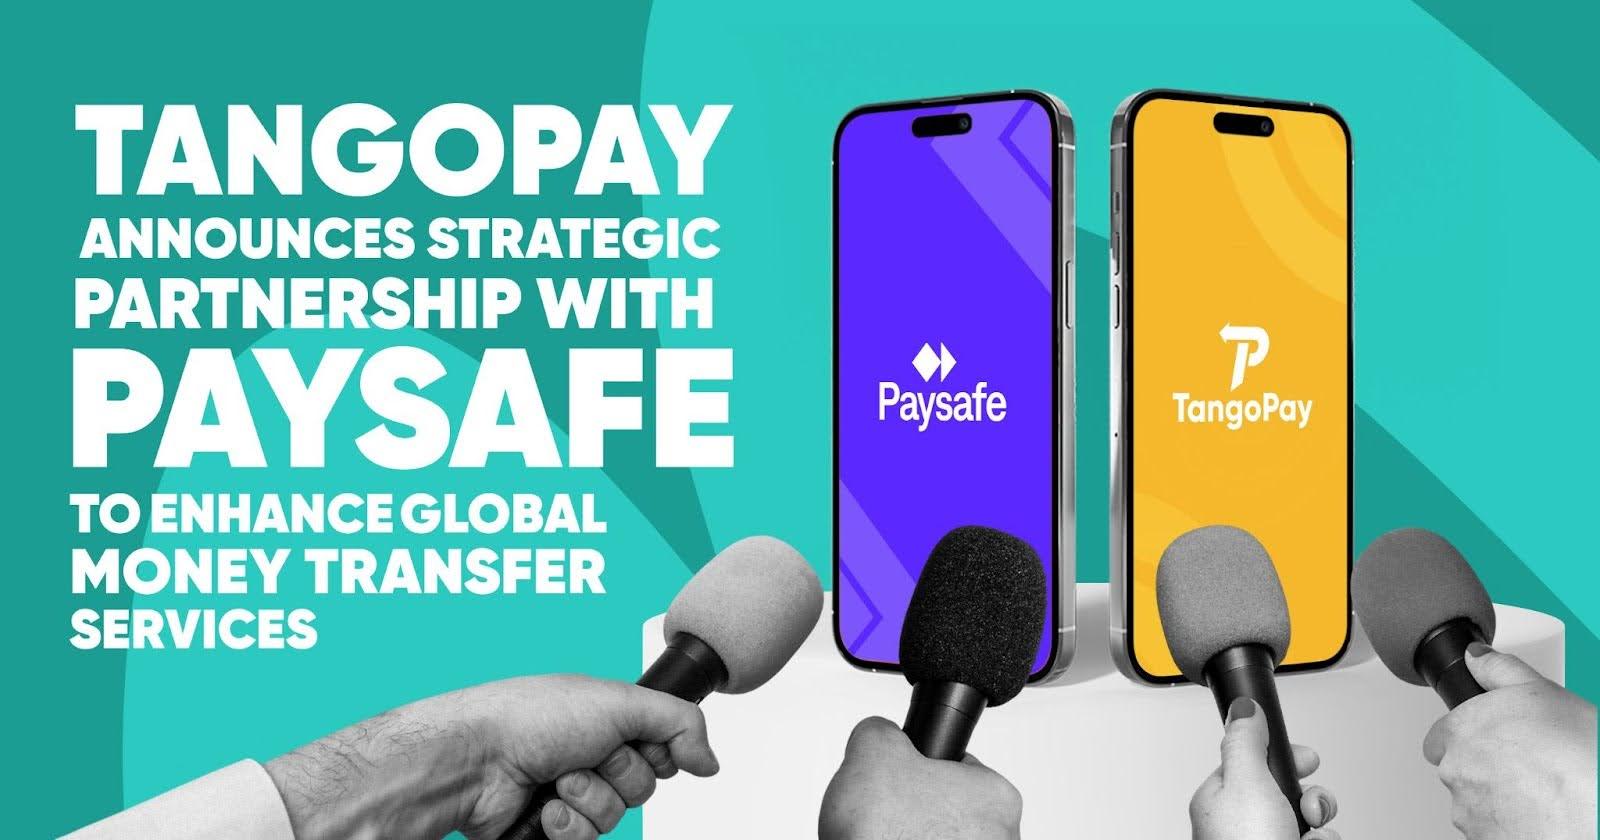 paysafe-tangopay-partnership